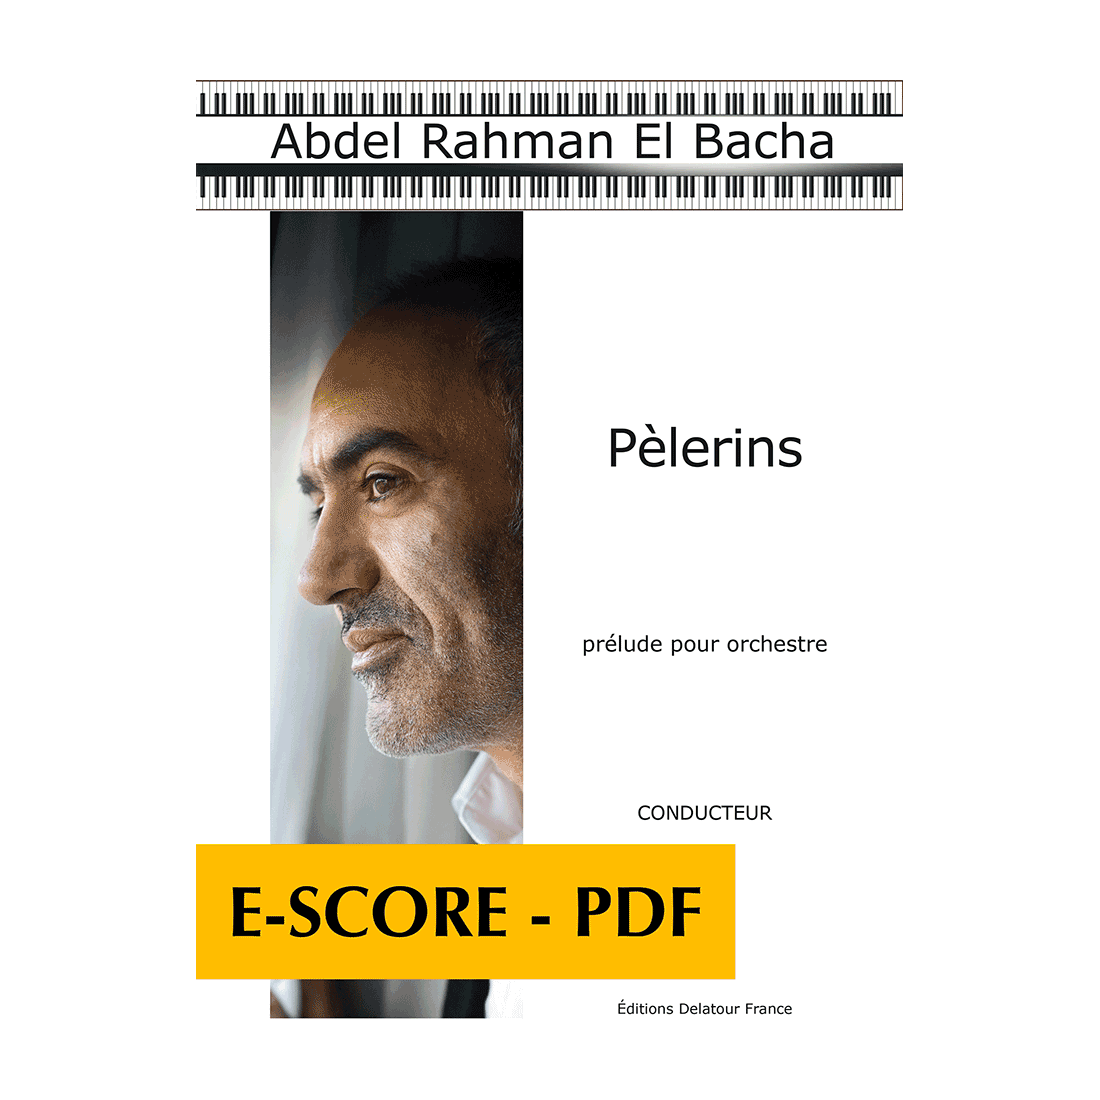 Pèlerins - Prelude für Orchester (FULL SCORE) - E-score PDF